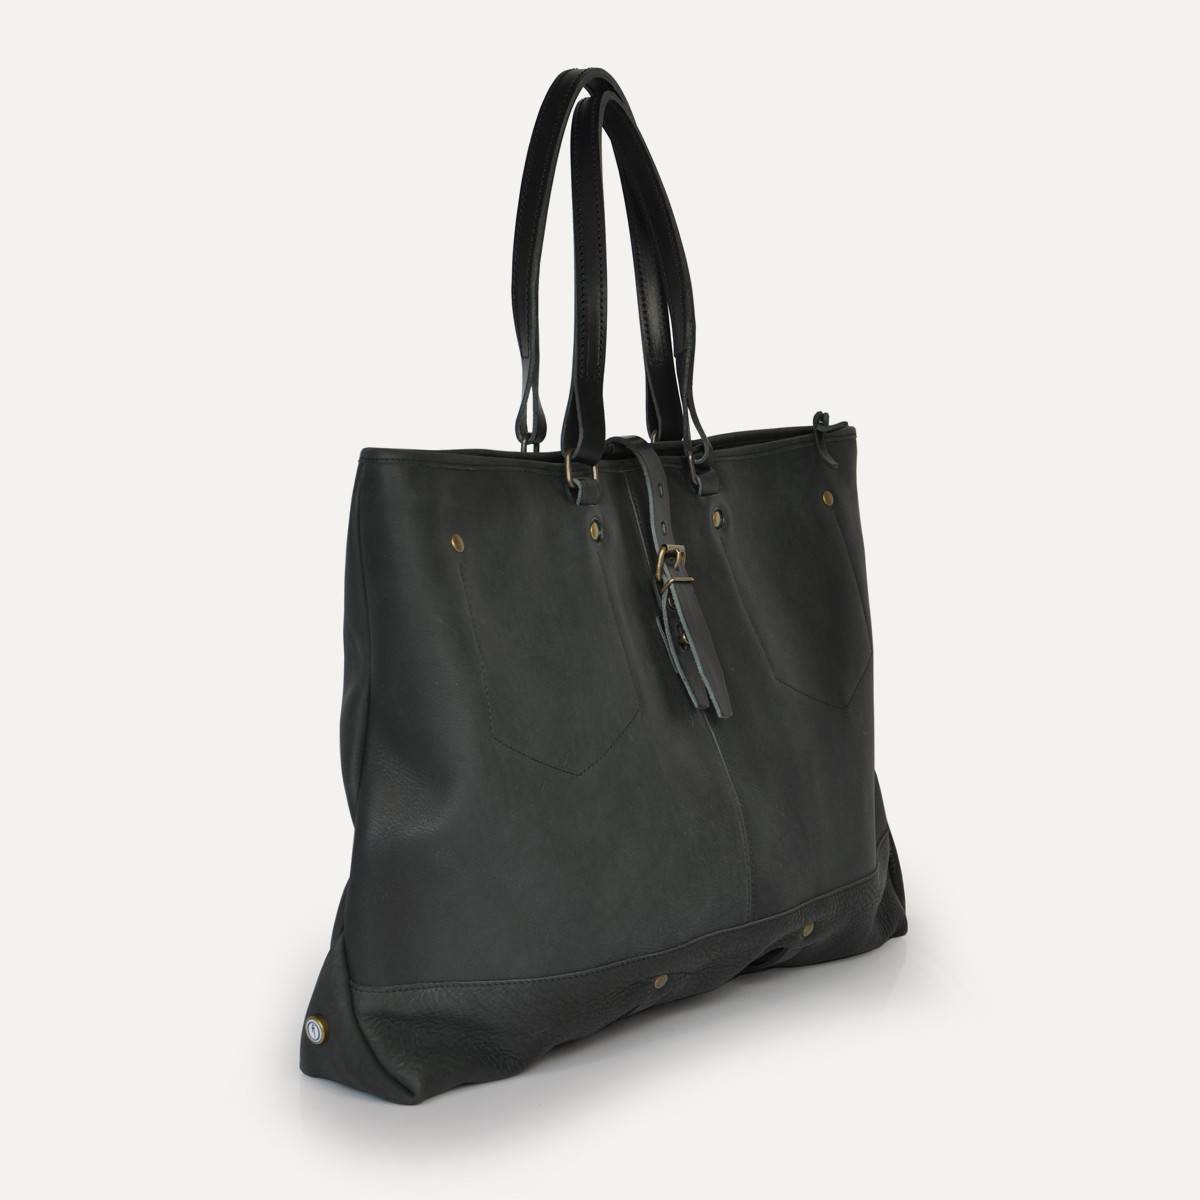 Garance shopping bag - Black (image n°2)